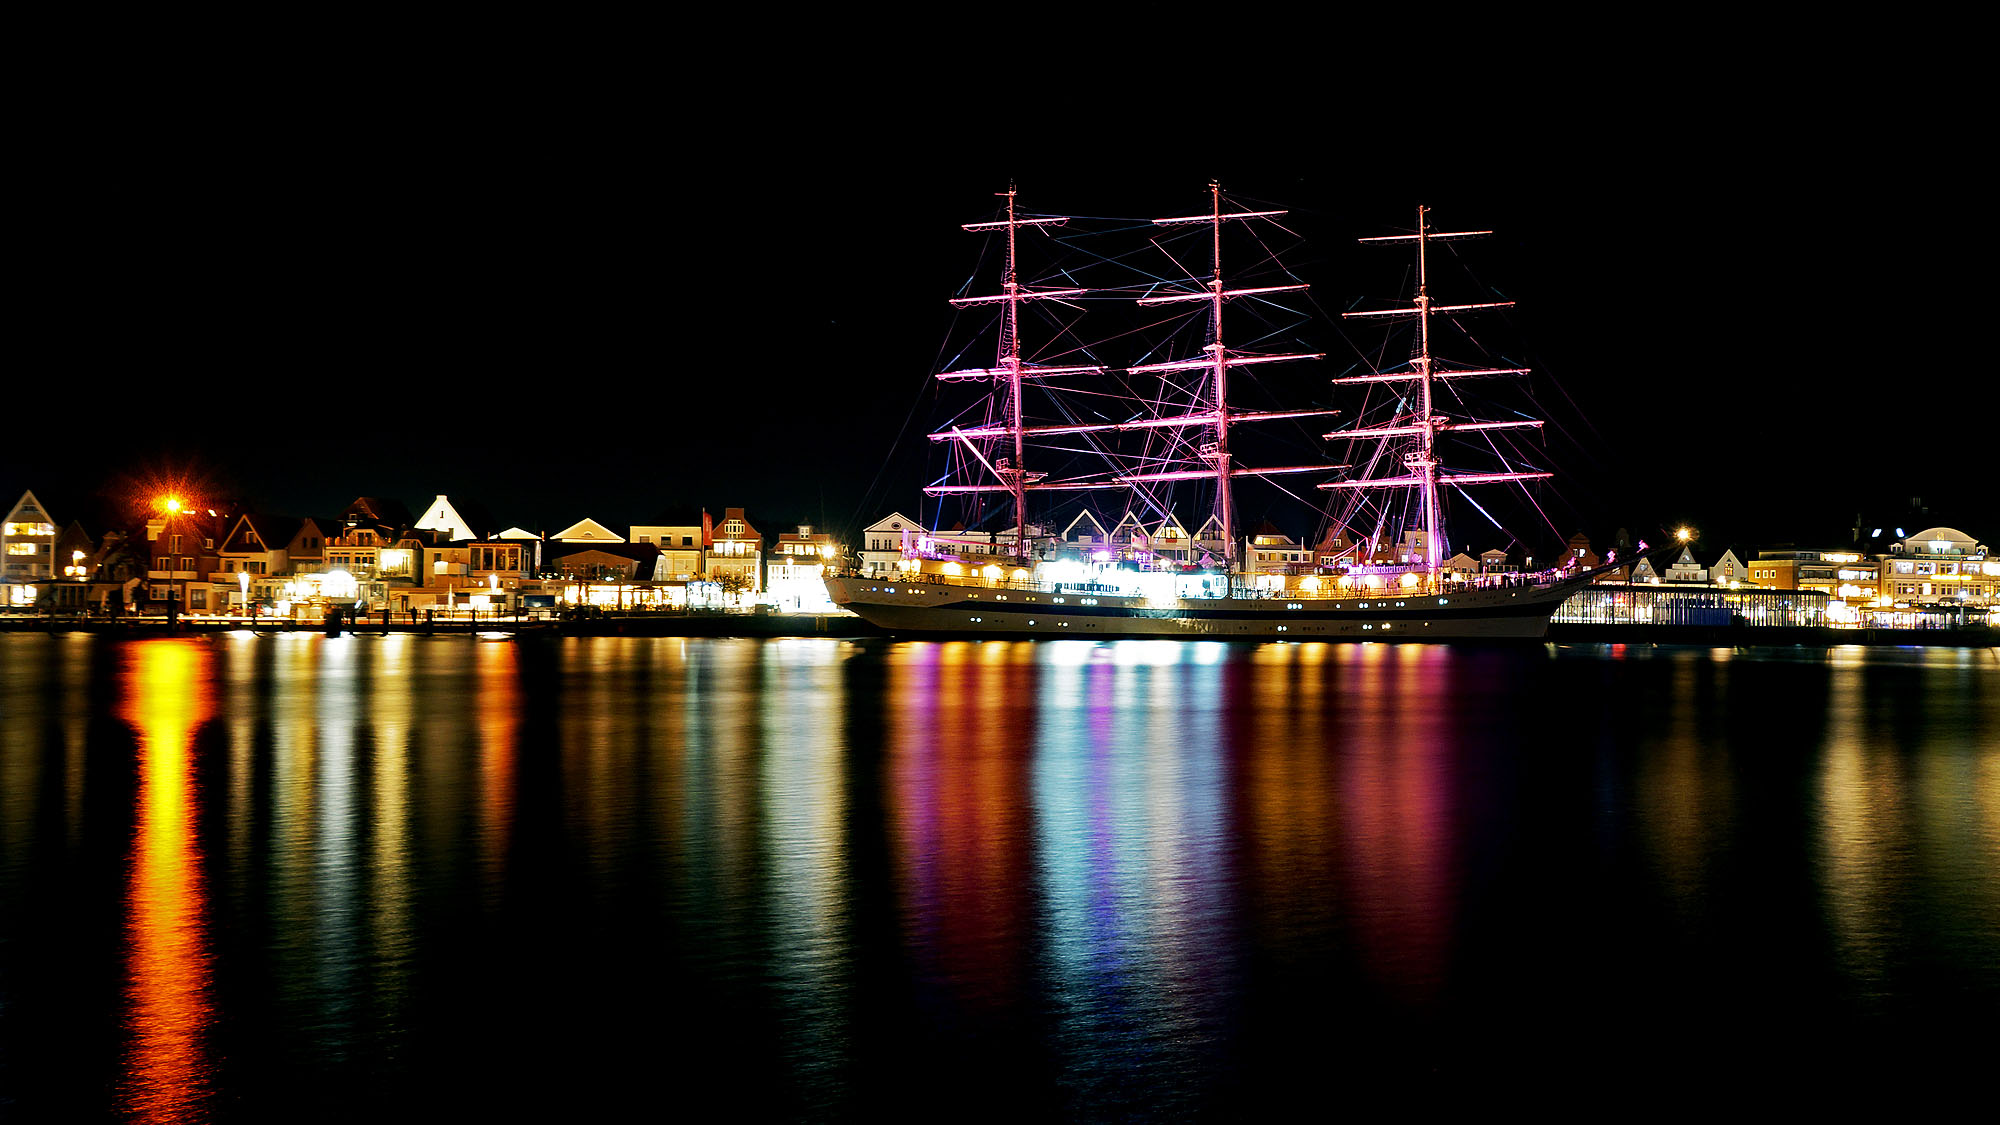 Das Segelschulschiff MIR am Kai in Travemünde bei Nacht